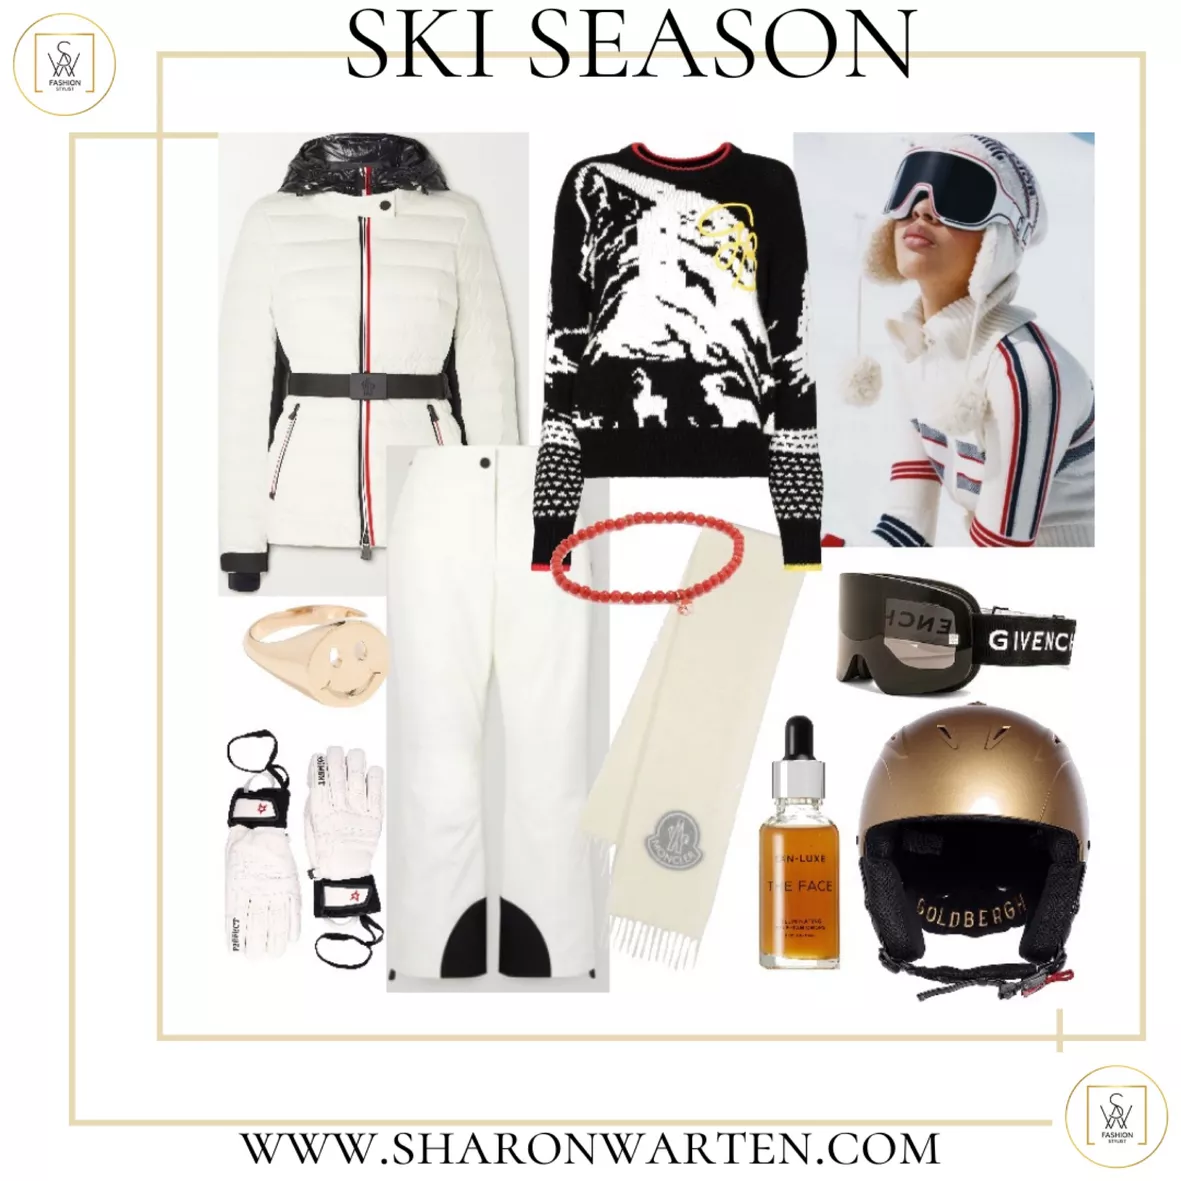 Headturner ski goggles curated on LTK